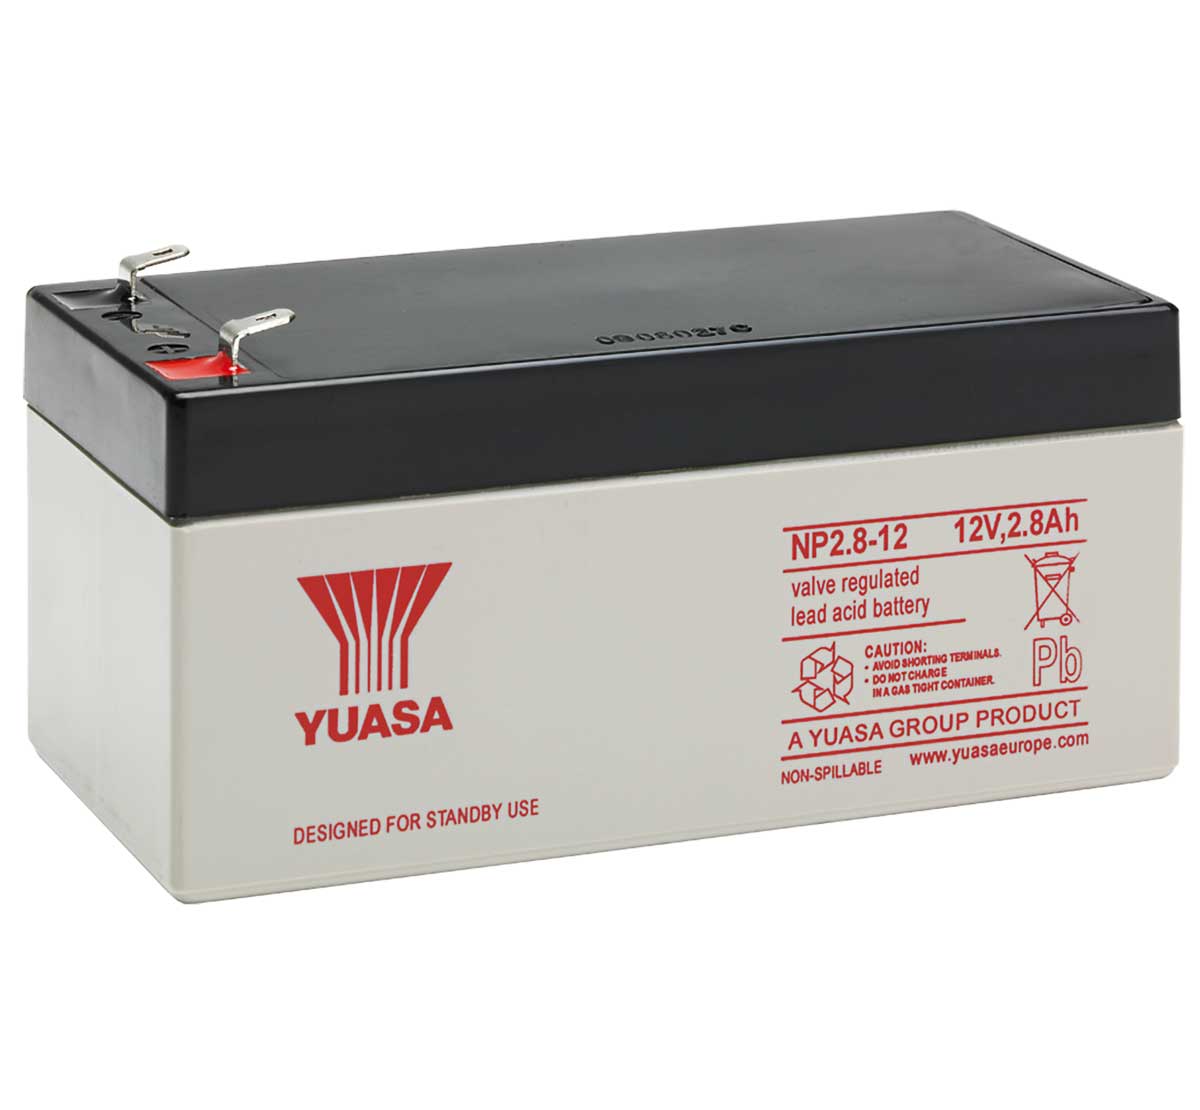 Yuasa NP2.8-12 12v 2.8Ah Lead Acid Battery.